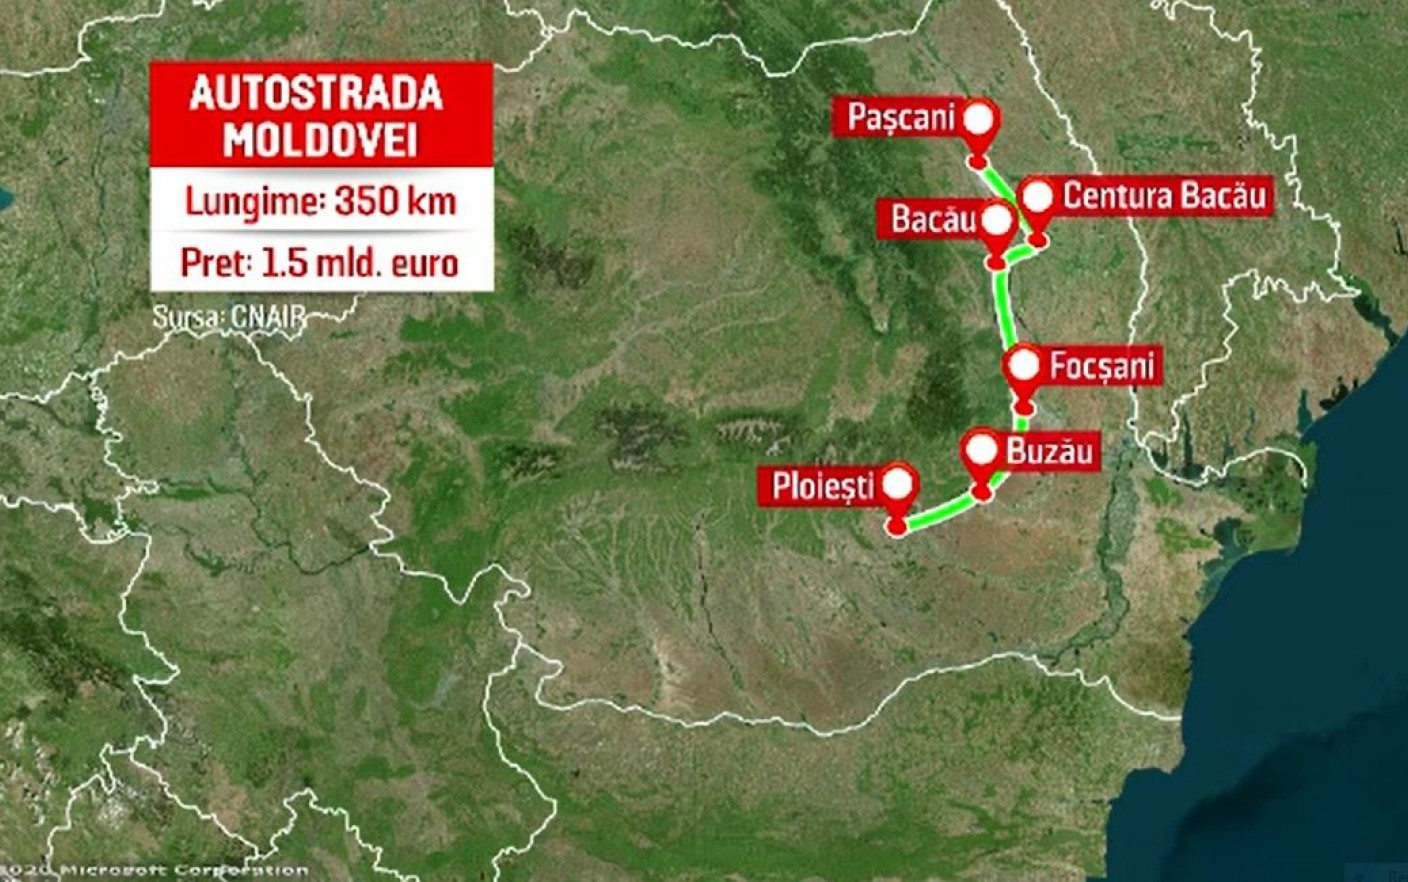 Ministrul Transporturilor se declară moderat optimist! Până în 2026, România va avea 438 de km de autostradă asumaţi prin PNRR